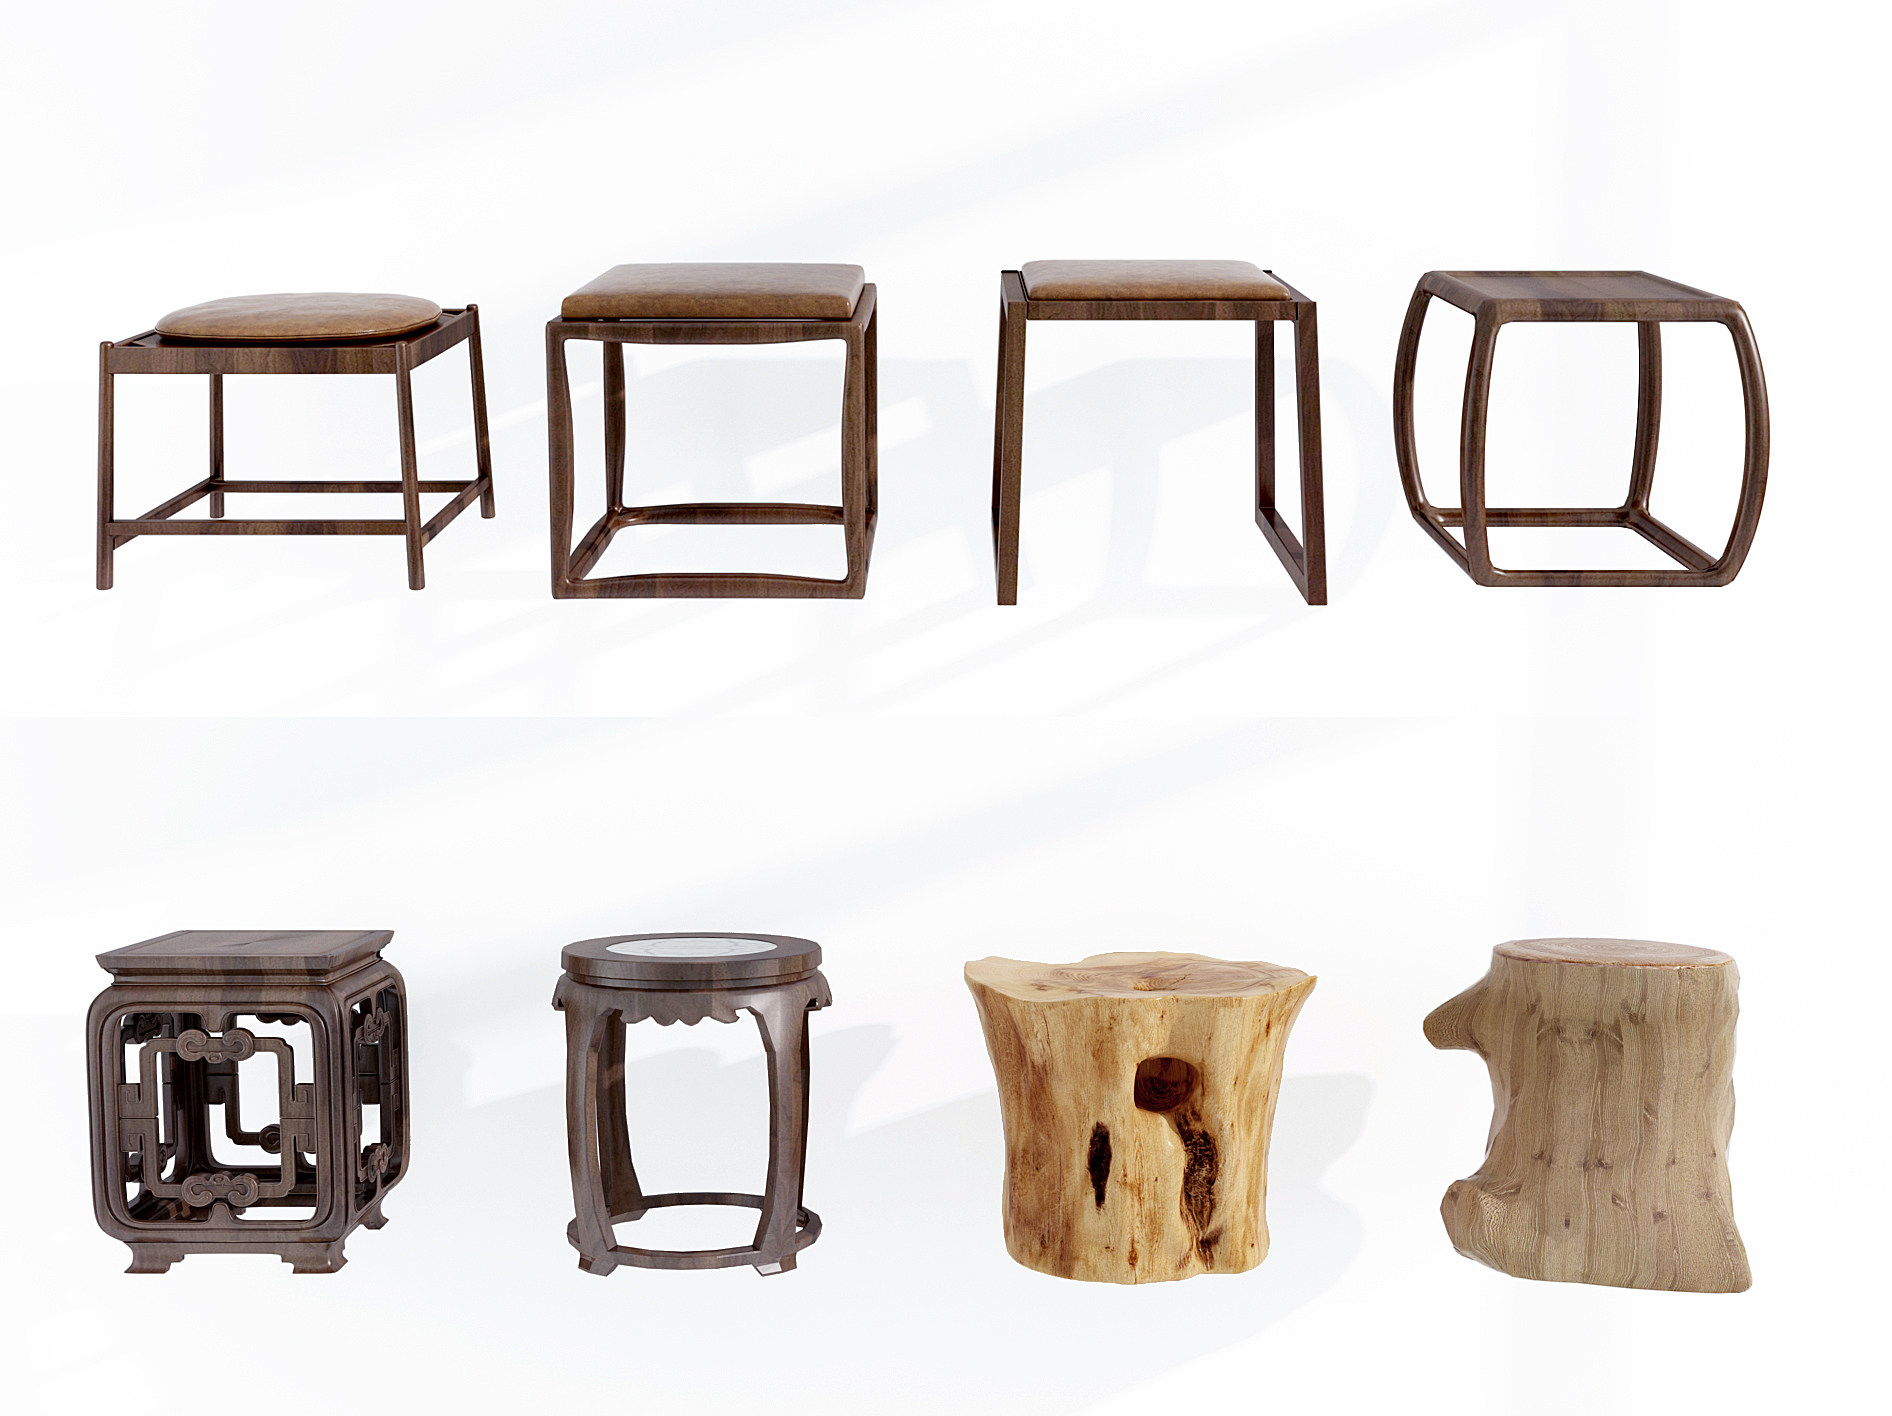 中式实木圆凳矮凳凳子组合3d模型下载